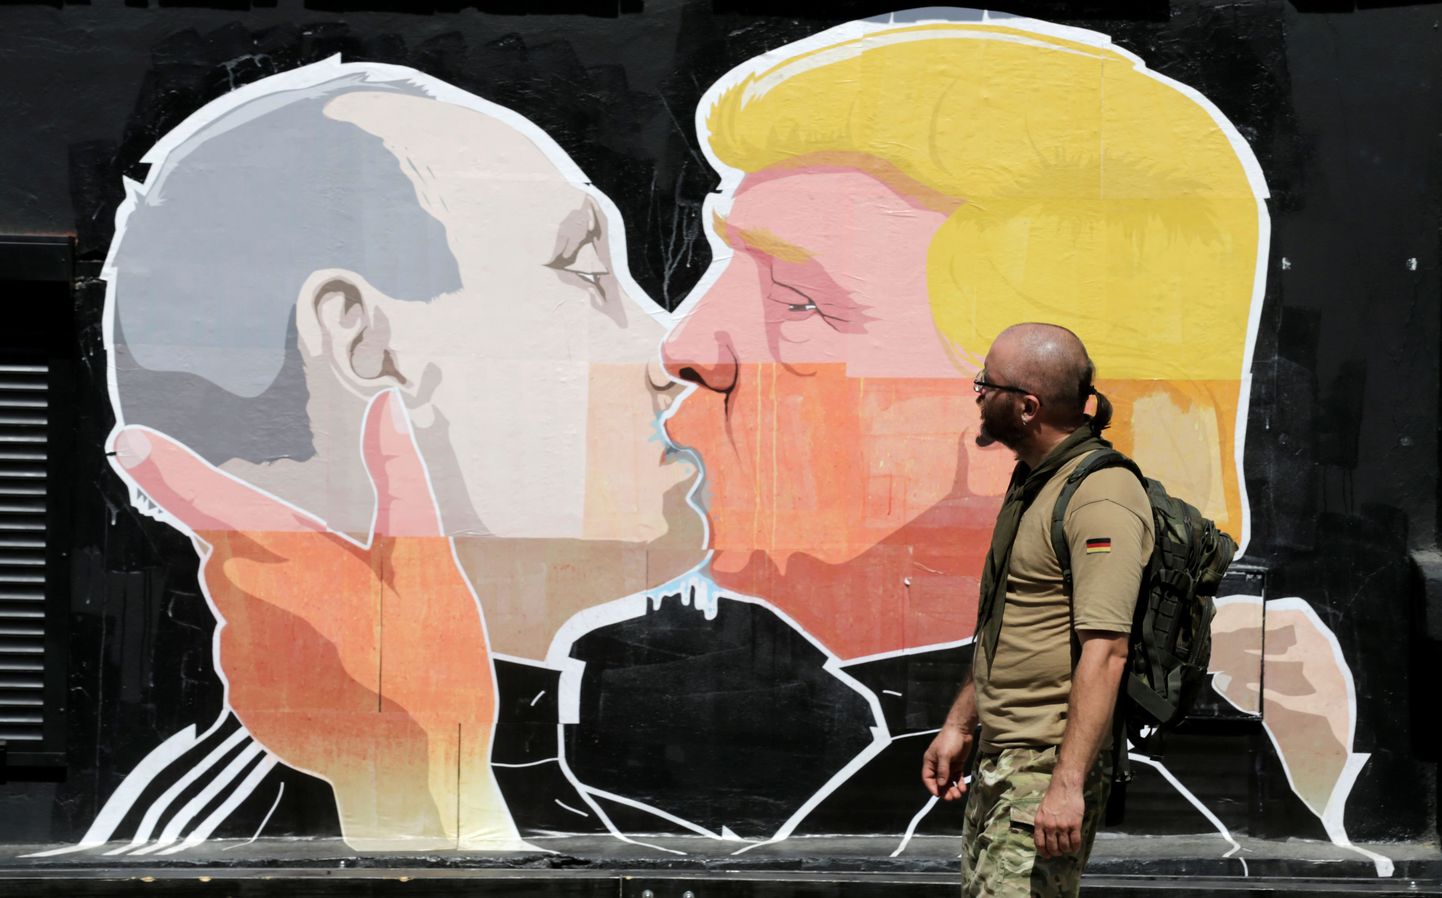 Graffiti, mis kujutab Putinit ja Trumpi suudlemas.